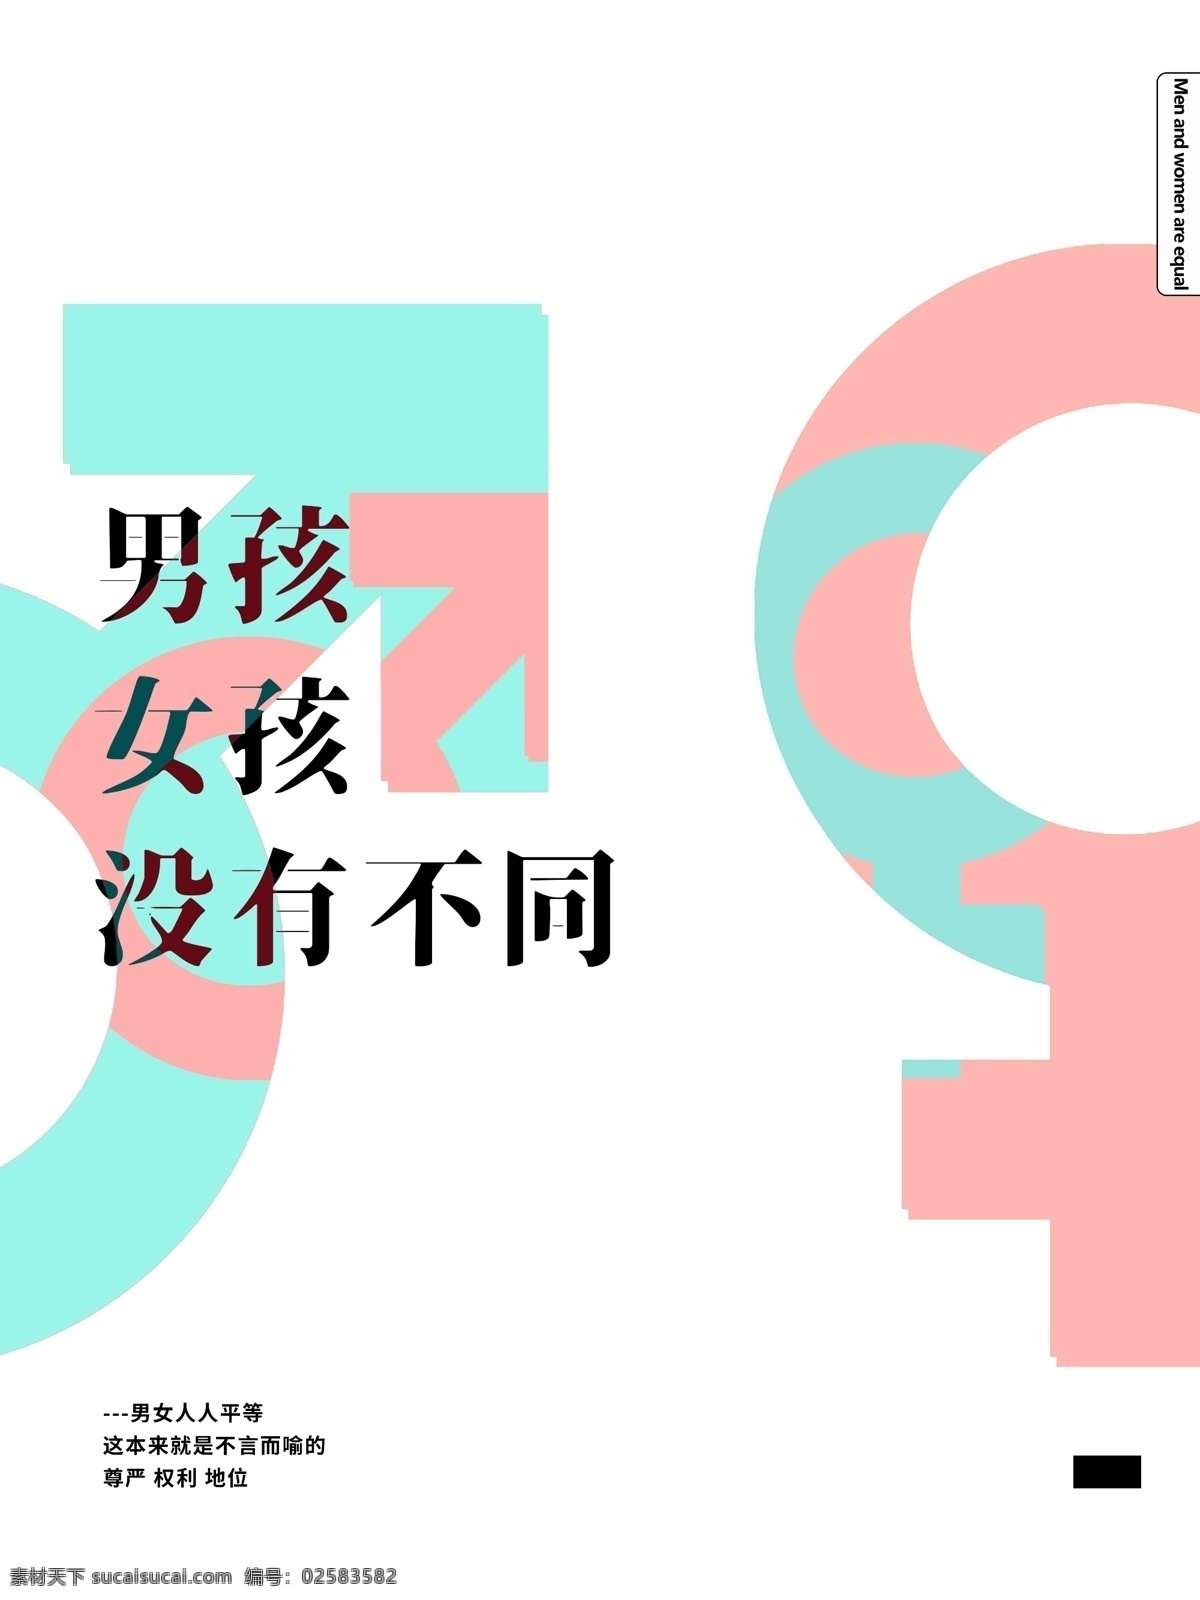 简约 排版 男女平等 海报 蓝色 公益海报 男女标志 白色 粉色 男女平权